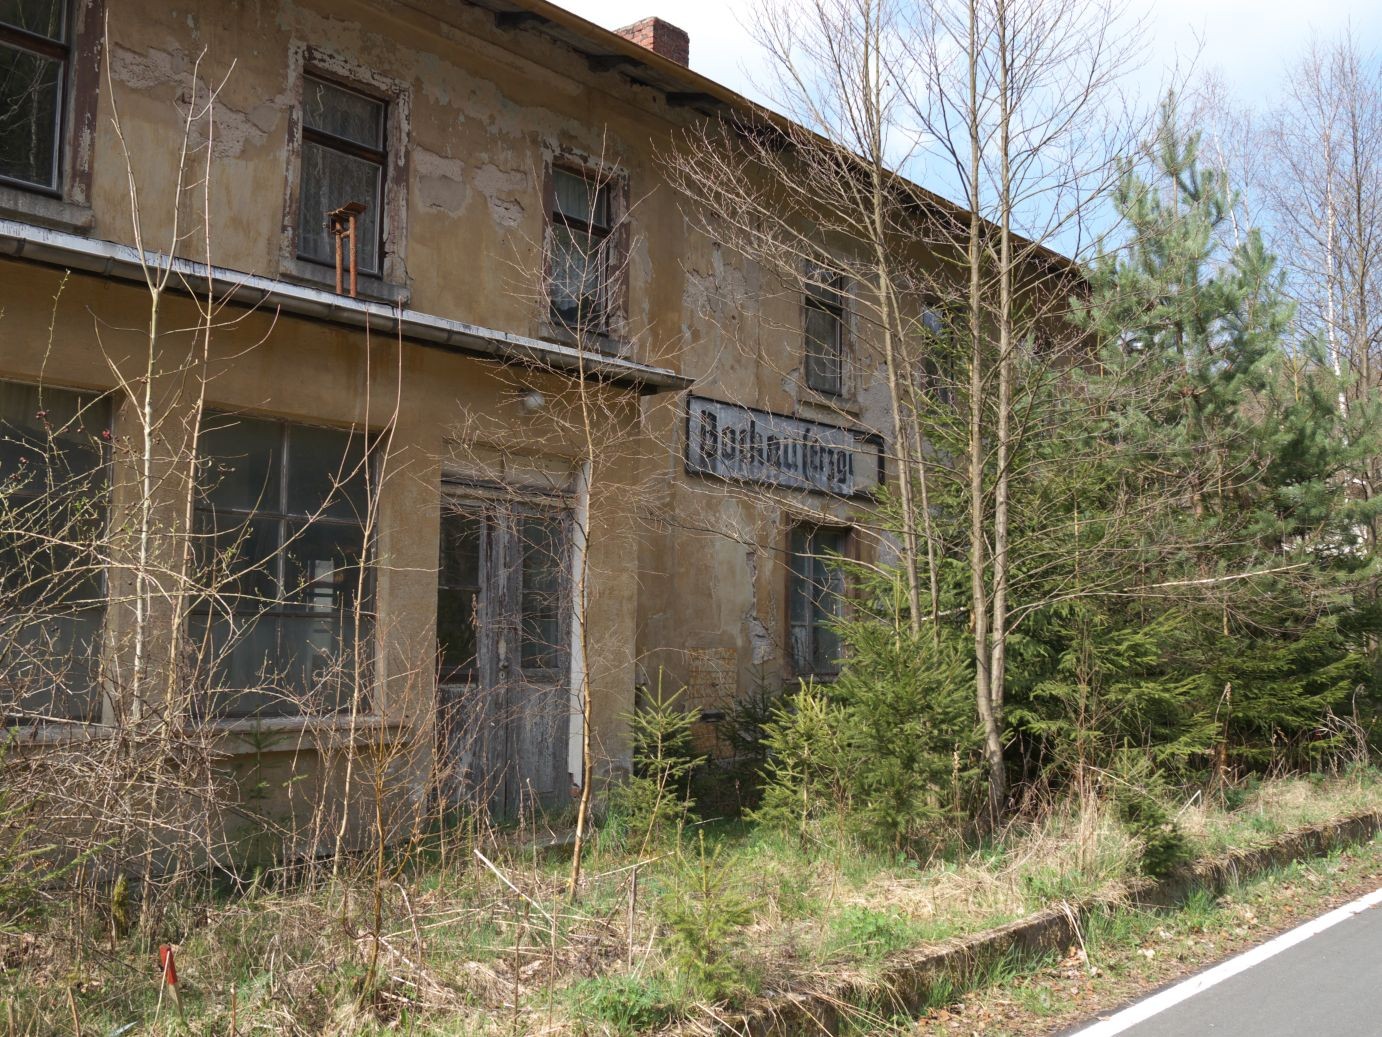 der alte Bahnhof von Bockau macht einen trostlosen Eindruck